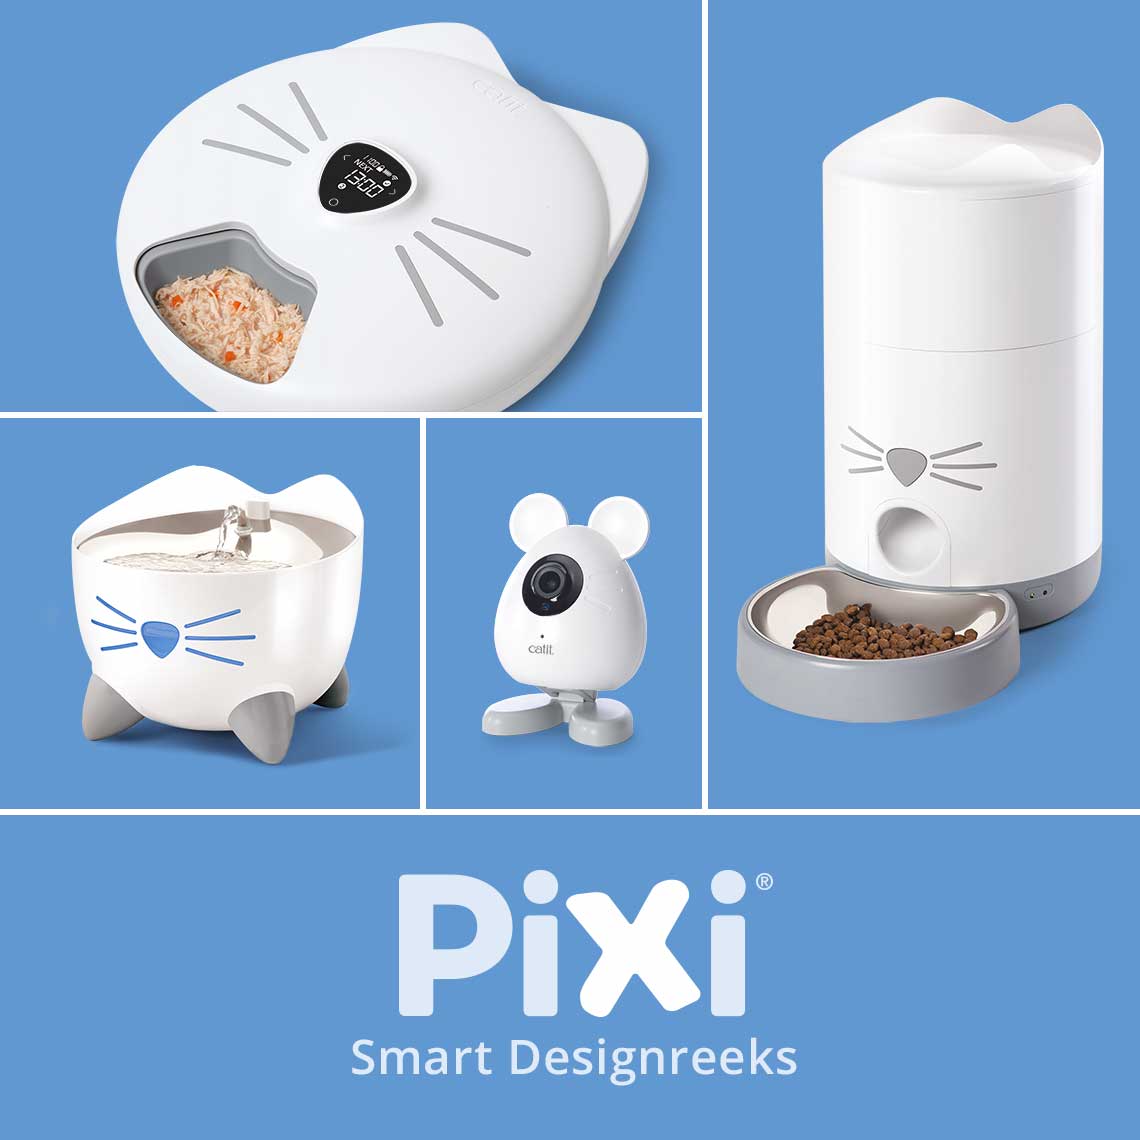 PIXI Smart Designreeks